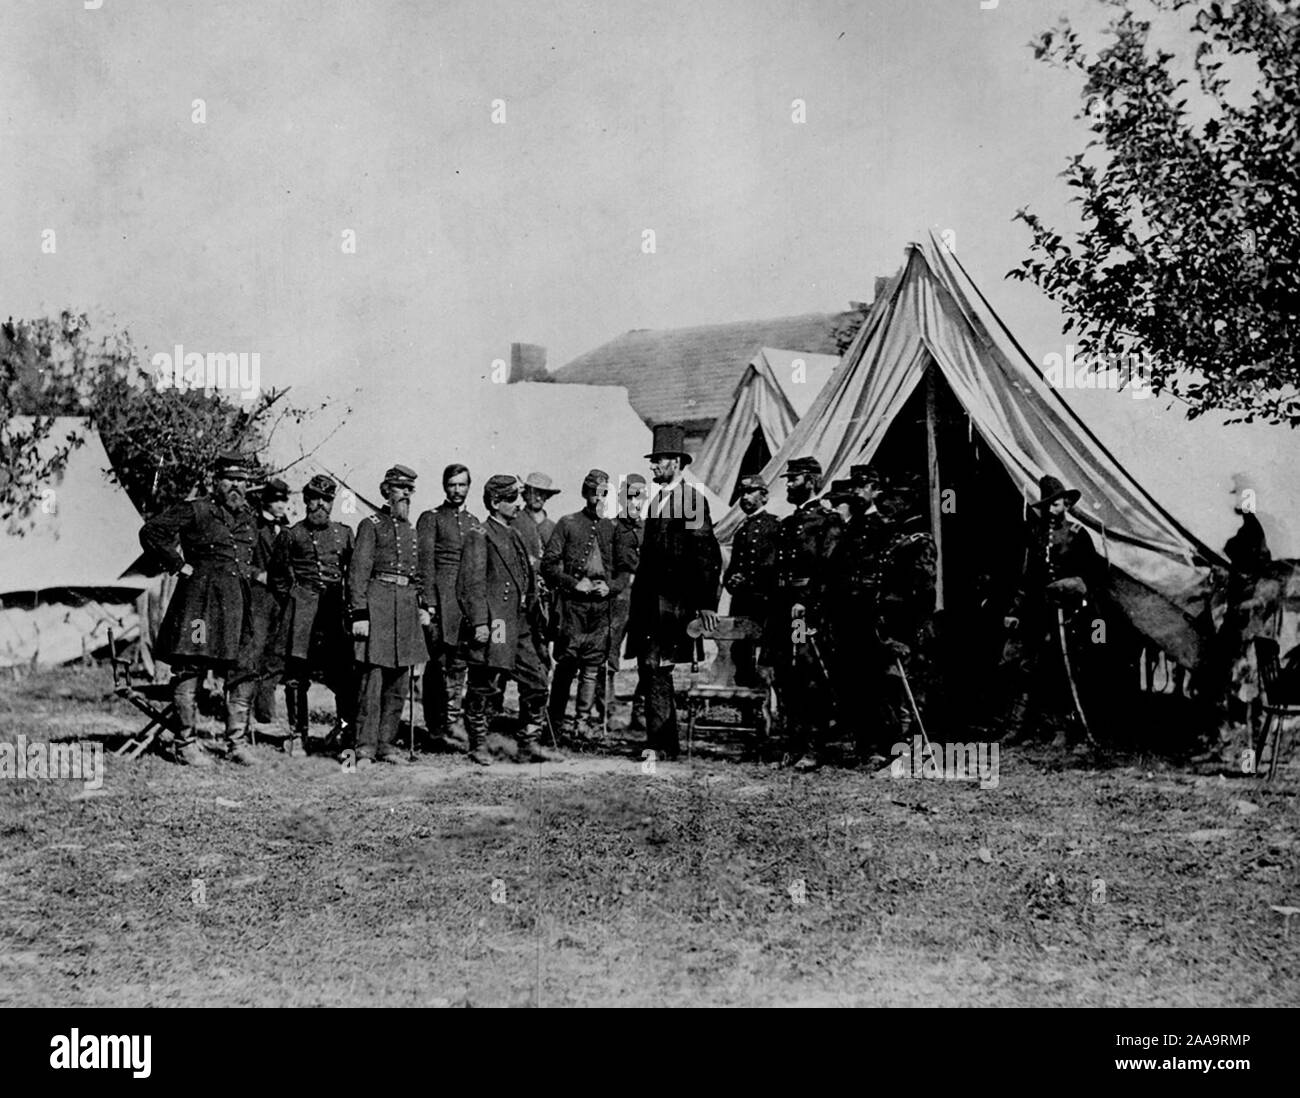 La guerra civile il presidente Lincoln visitando il campo di battaglia di Antietam, Md., 3 ottobre 1862. Generale McClellan e 15 membri del suo staff sono nel gruppo. Foto Stock